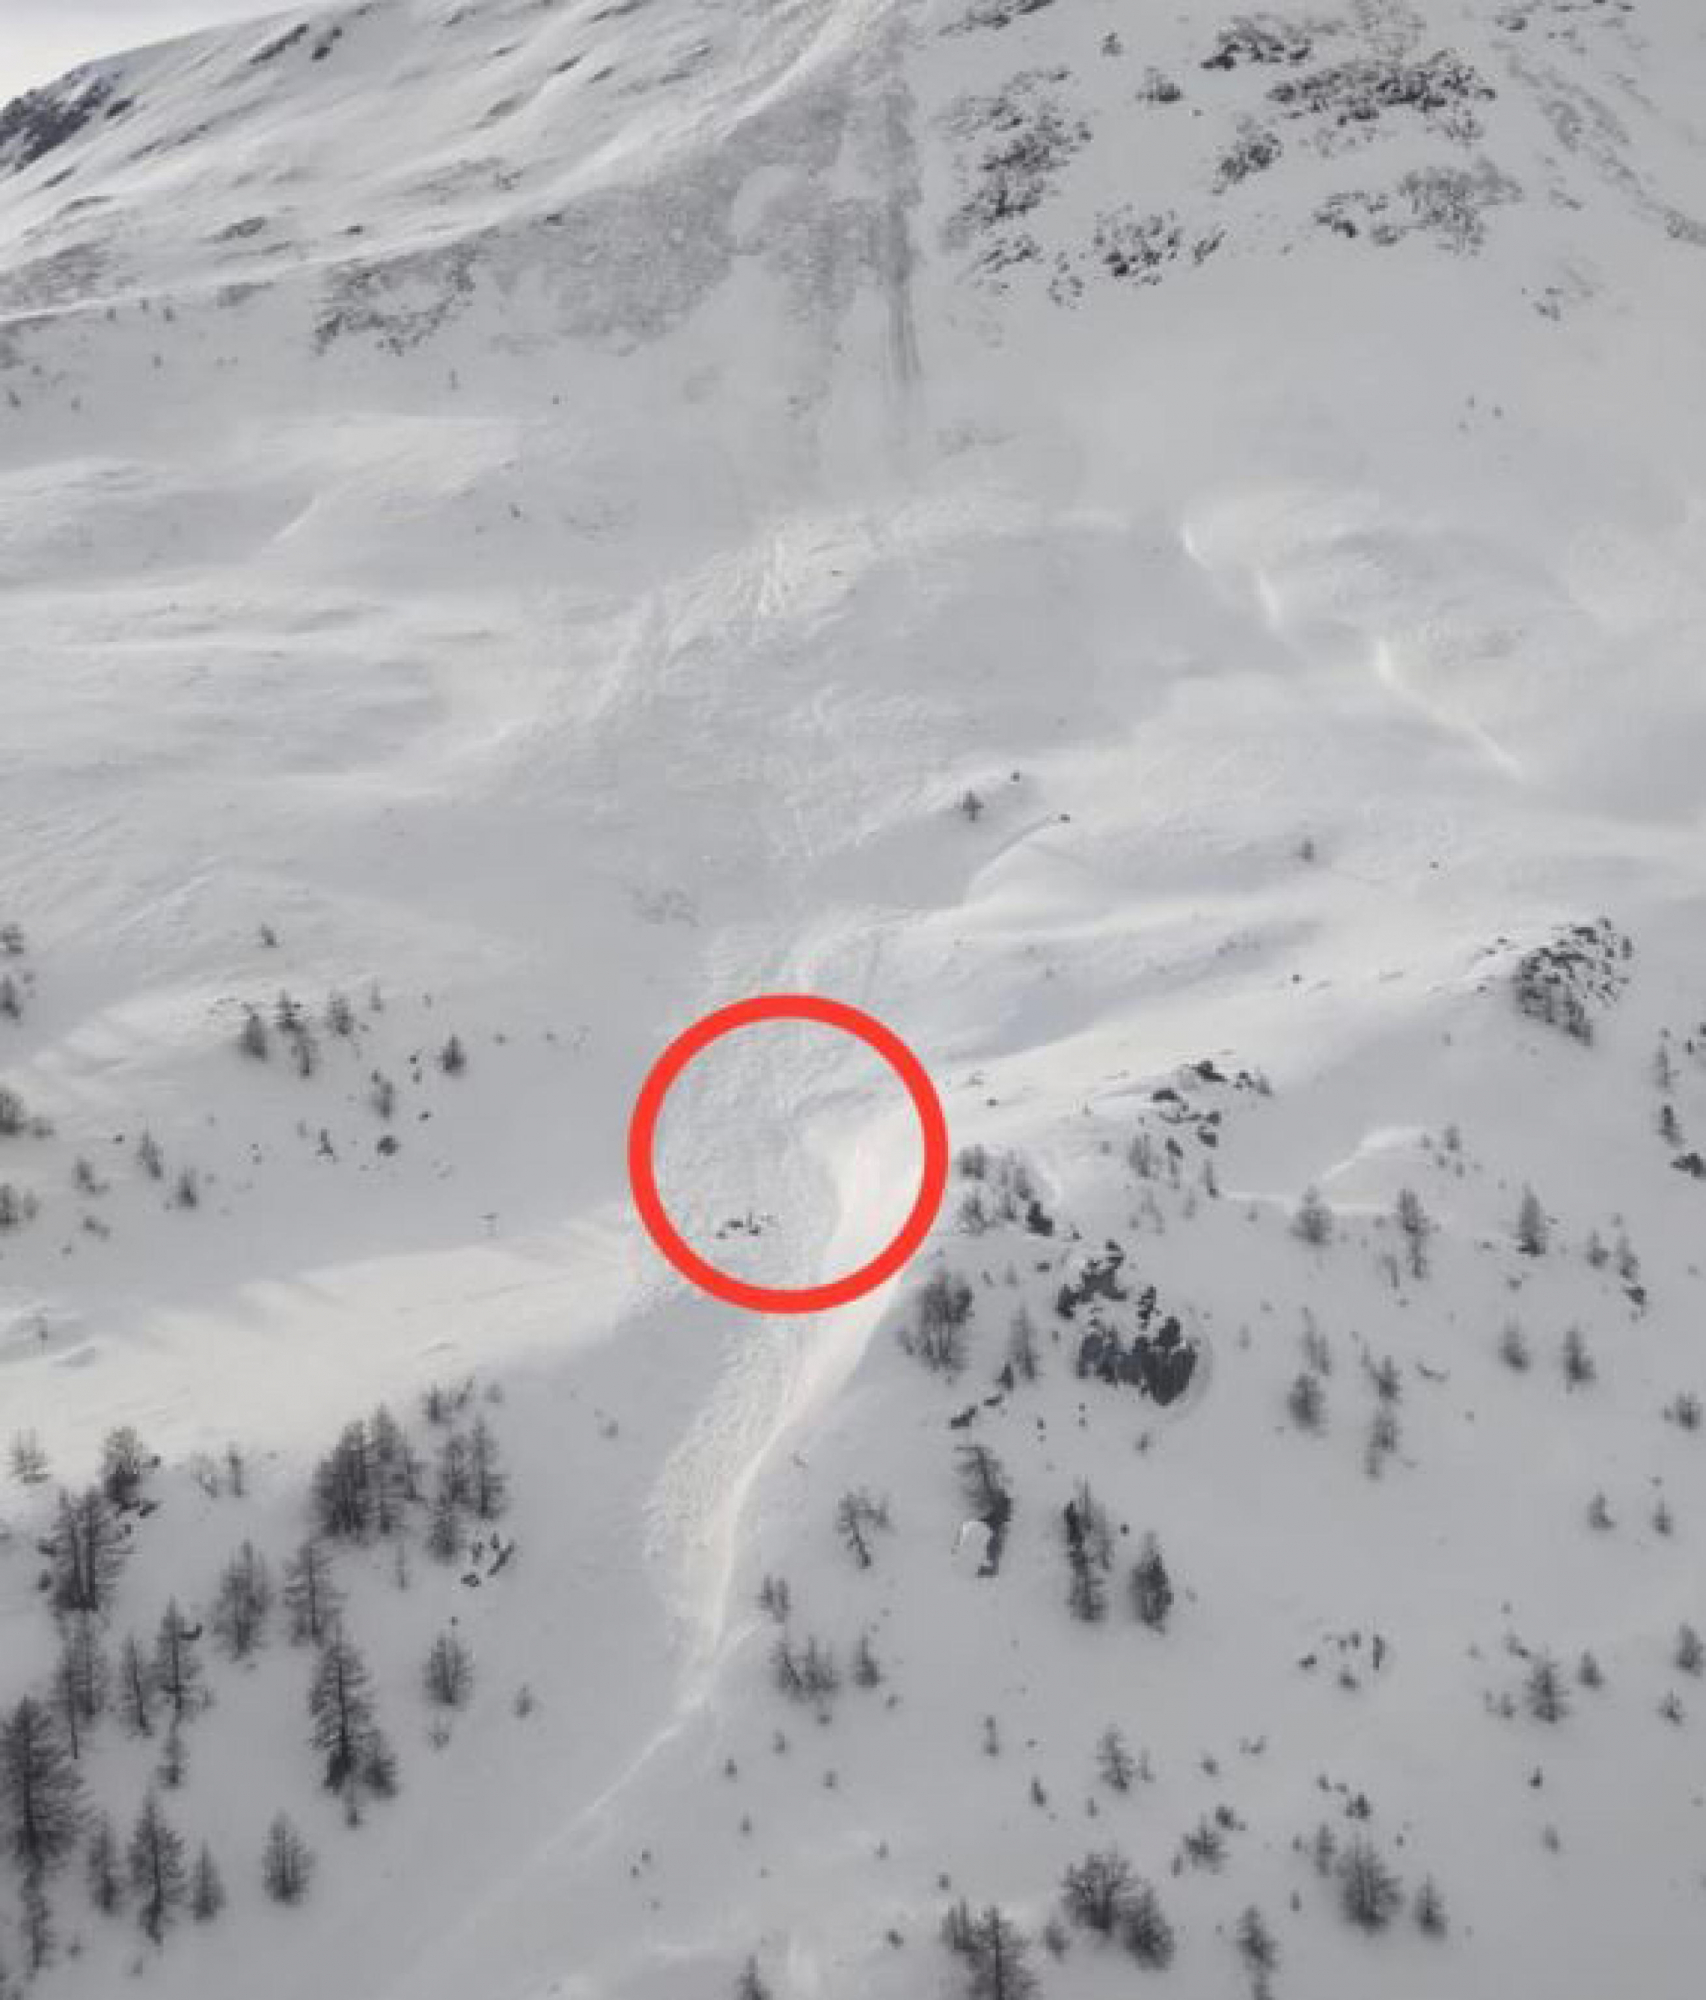 Uno scialpinista è morto a causa del distacco di una valanga in Valle d'Aosta. L'incidente è avvenuto poco dopo mezzogiorno nella zona di Punta Chaligne, vetta di 2.608 metri a Nord di Aosta, 14 gennaio 2023. L'uomo è stato sepolto dalla neve. Si è salvato l'altro scialpinista che era con lui. Il distacco della slavina è avvenuto a quota 2.400 metri.     NPK      ANSA / Soccorso alpino valdostano    +++ ANSA PROVIDES ACCESS TO THIS HANDOUT PHOTO TO BE USED SOLELY TO ILLUSTRATE NEWS REPORTING OR COMMENTARY ON THE FACTS OR EVENTS DEPICTED IN THIS IMAGE; NO ARCHIVING; NO LICENSING +++